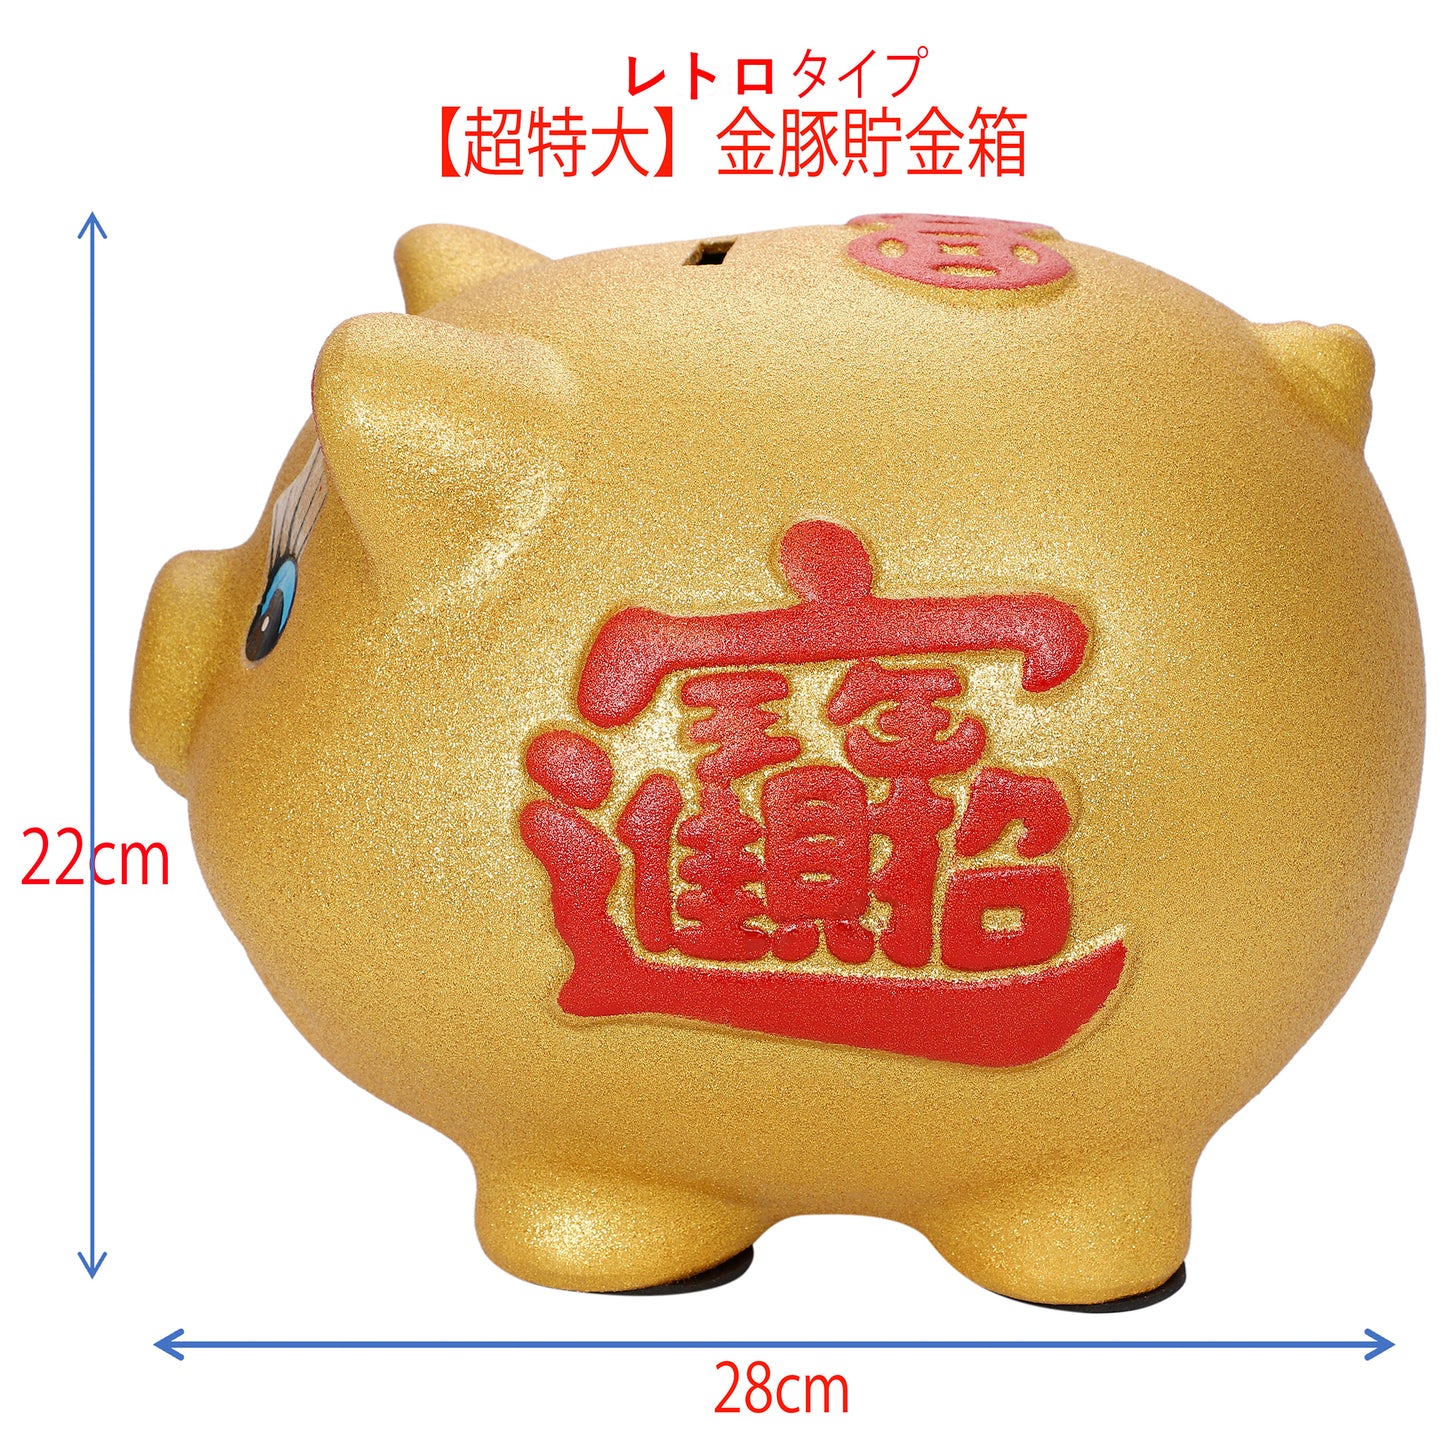 金豚貯金箱 レトロタイプ 【超特大サイズ】28センチ